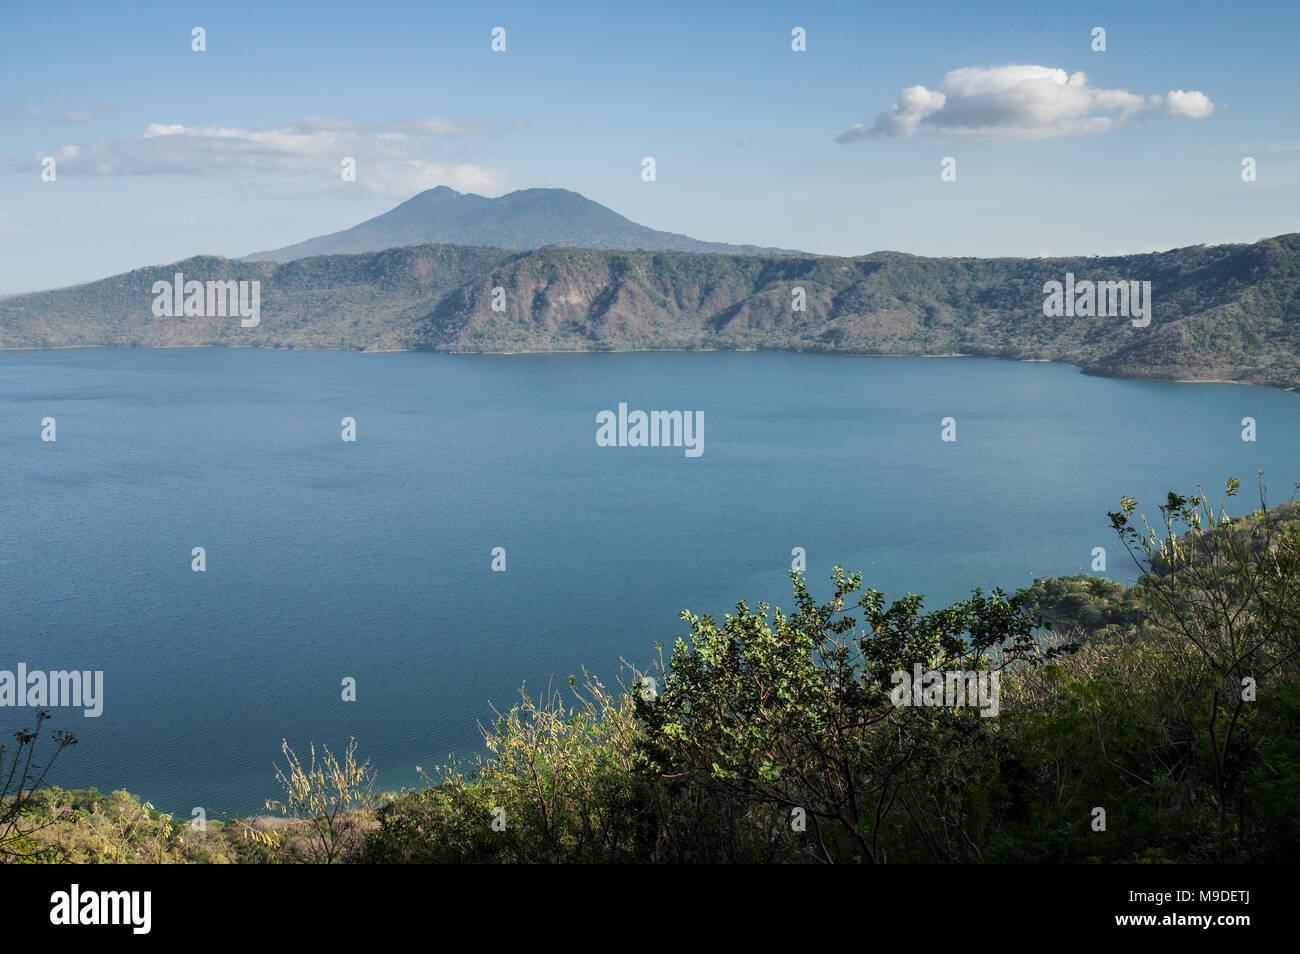 Blick auf die Laguna de Apoyo mit Vulkan Mombacho auf der linken Seite sichtbar - Nicaragua, Mittelamerika Stockfoto